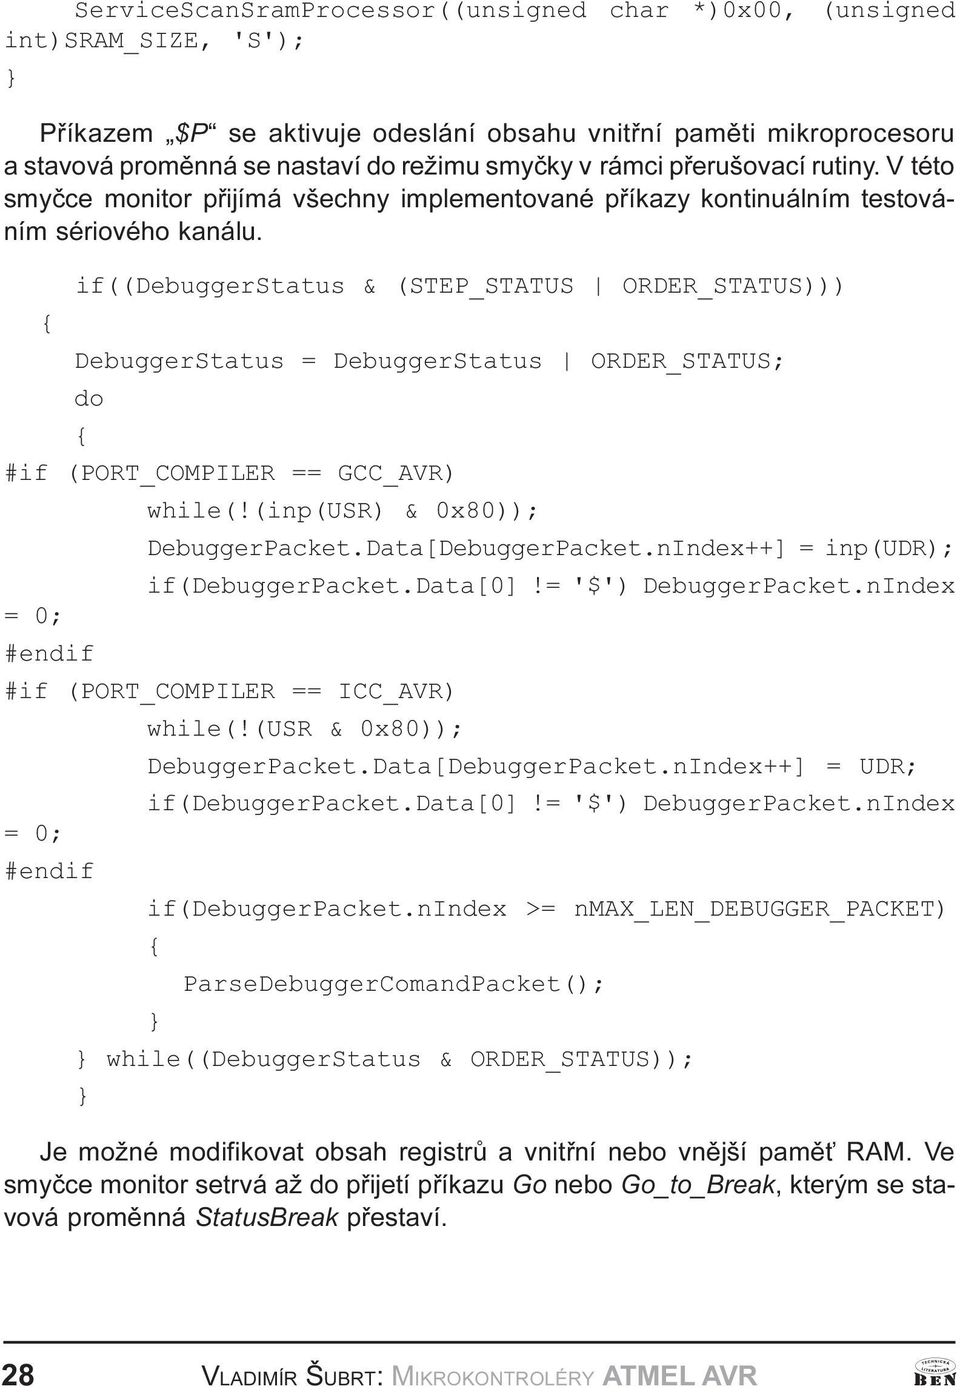 DebuggerStatus ORDER_STTUS; do #if (PORT_COMPILER == GCC_VR) while(!(inp(usr) & 0x80)); DebuggerPacket Data[DebuggerPacket nindex++] = inp(udr); if(debuggerpacket Data[0]!